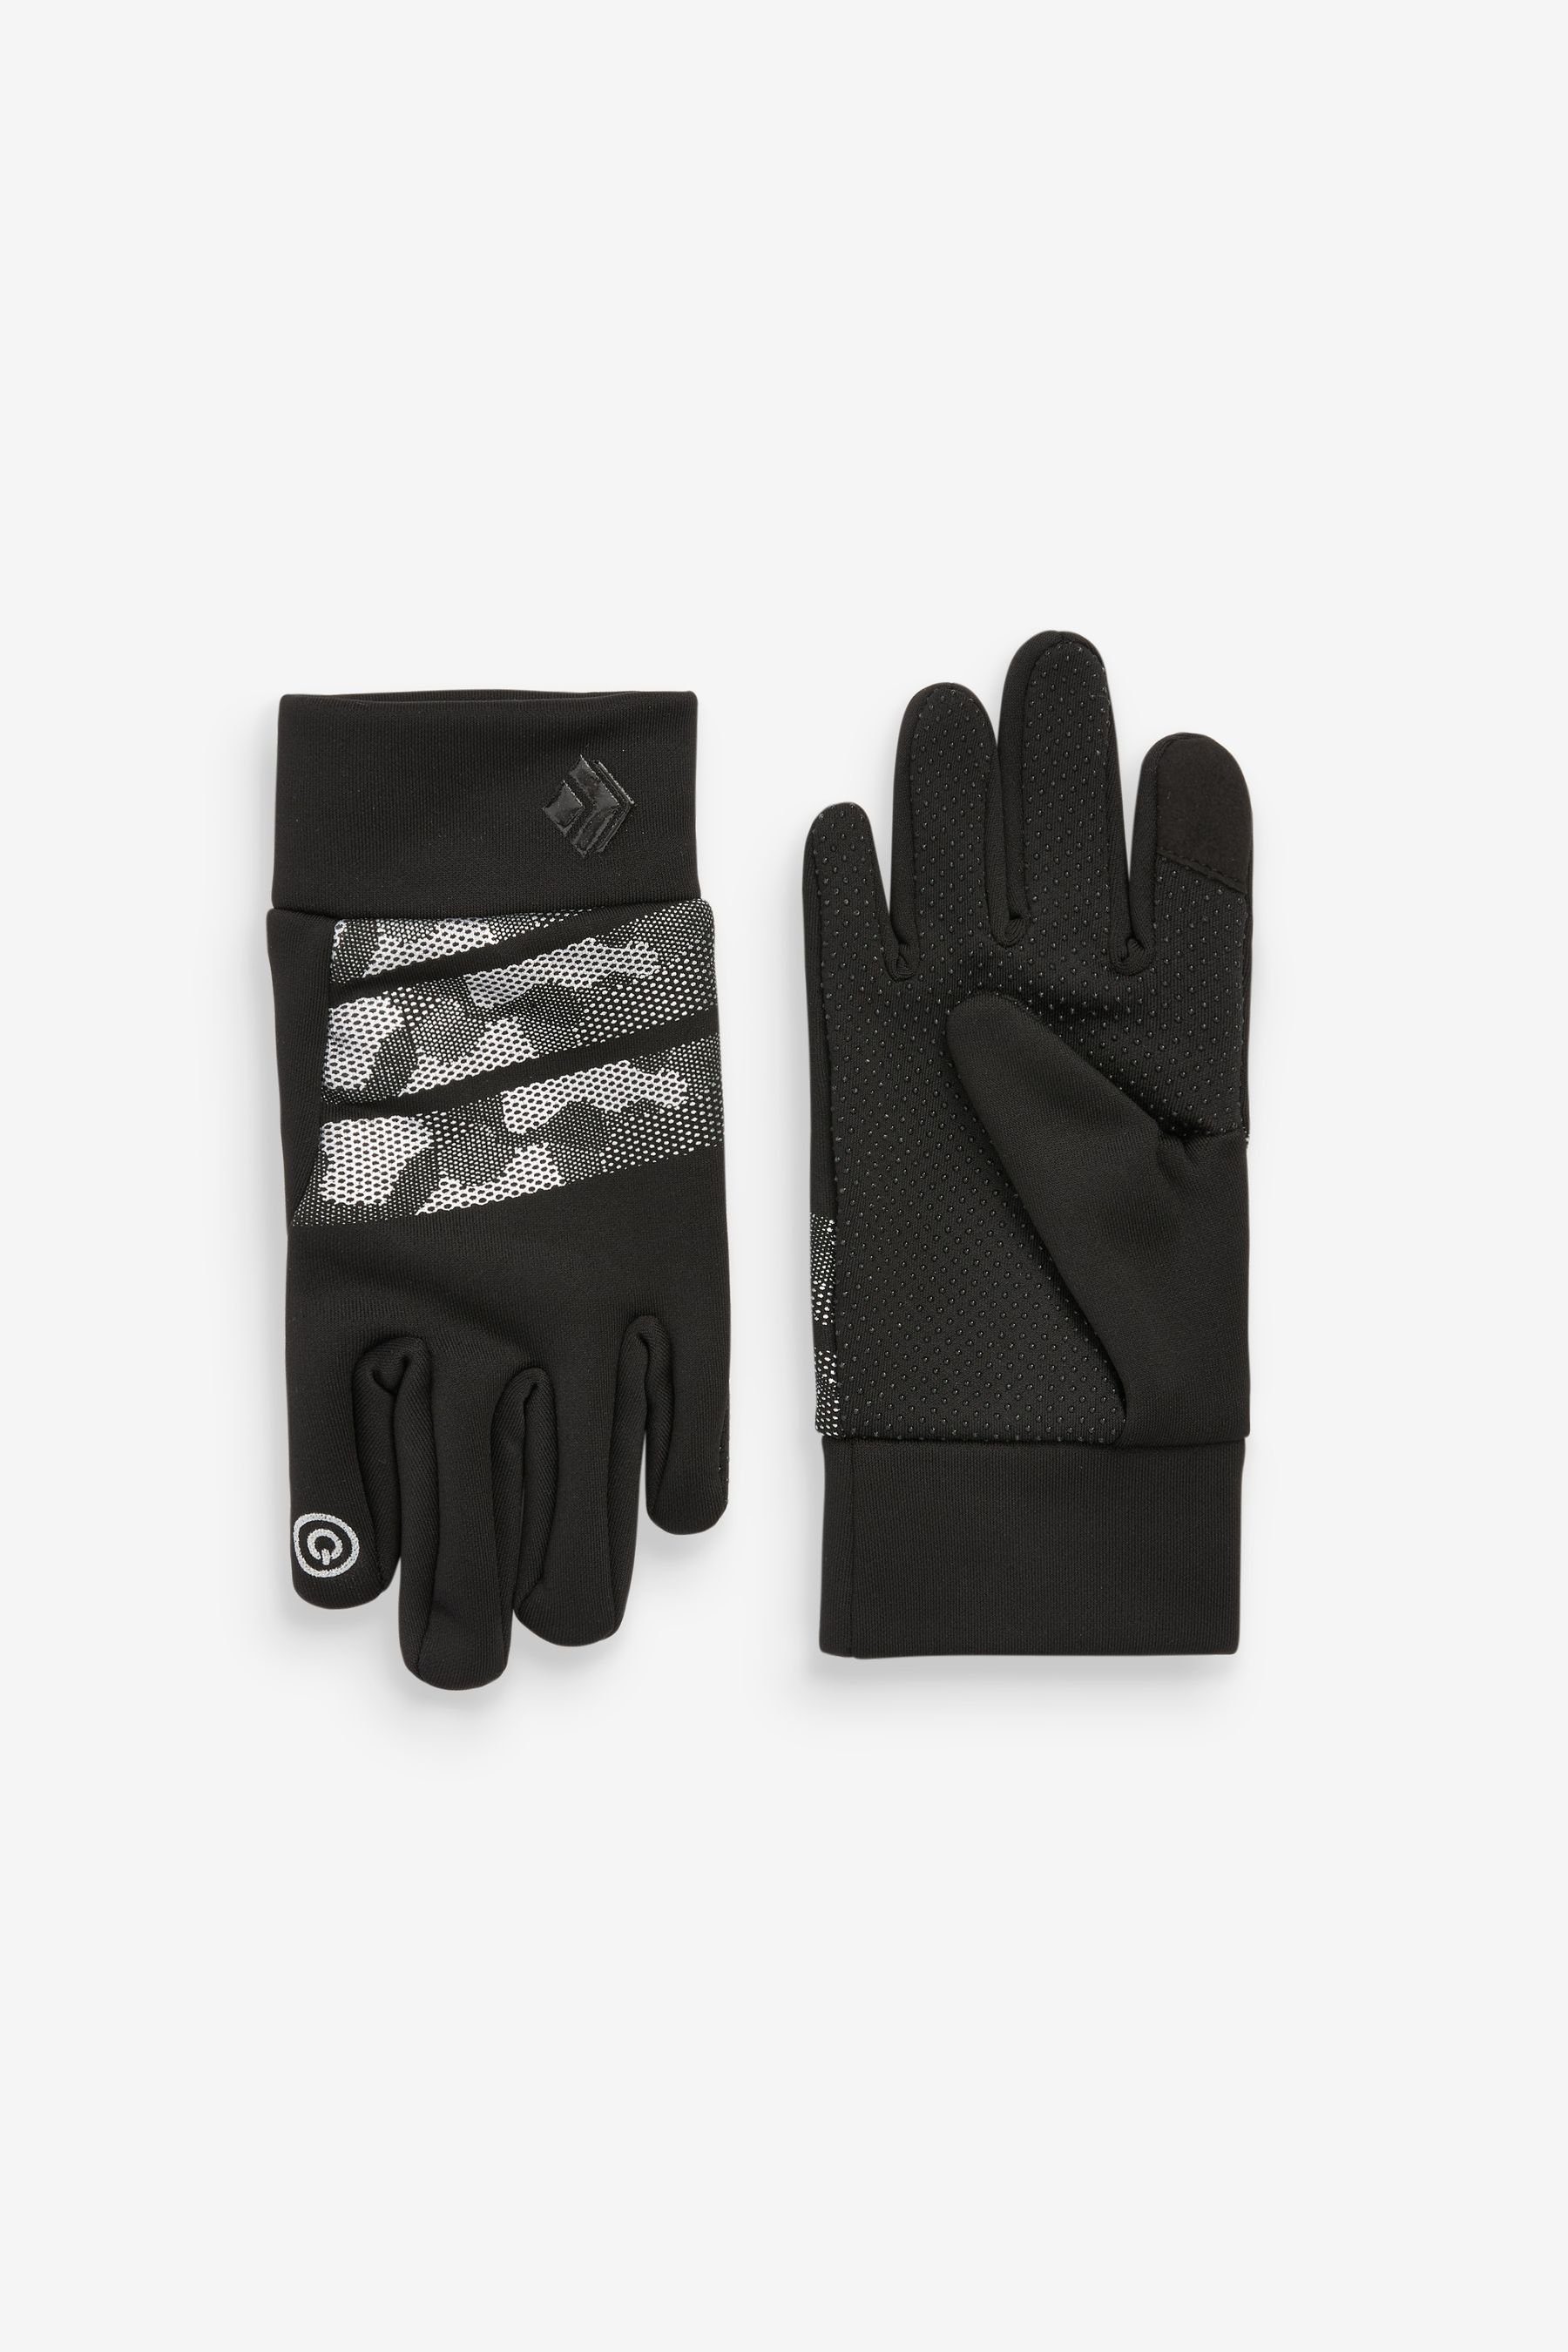 Strickhandschuhe Black/Grey Handschuhe Next Sportliche Camouflage